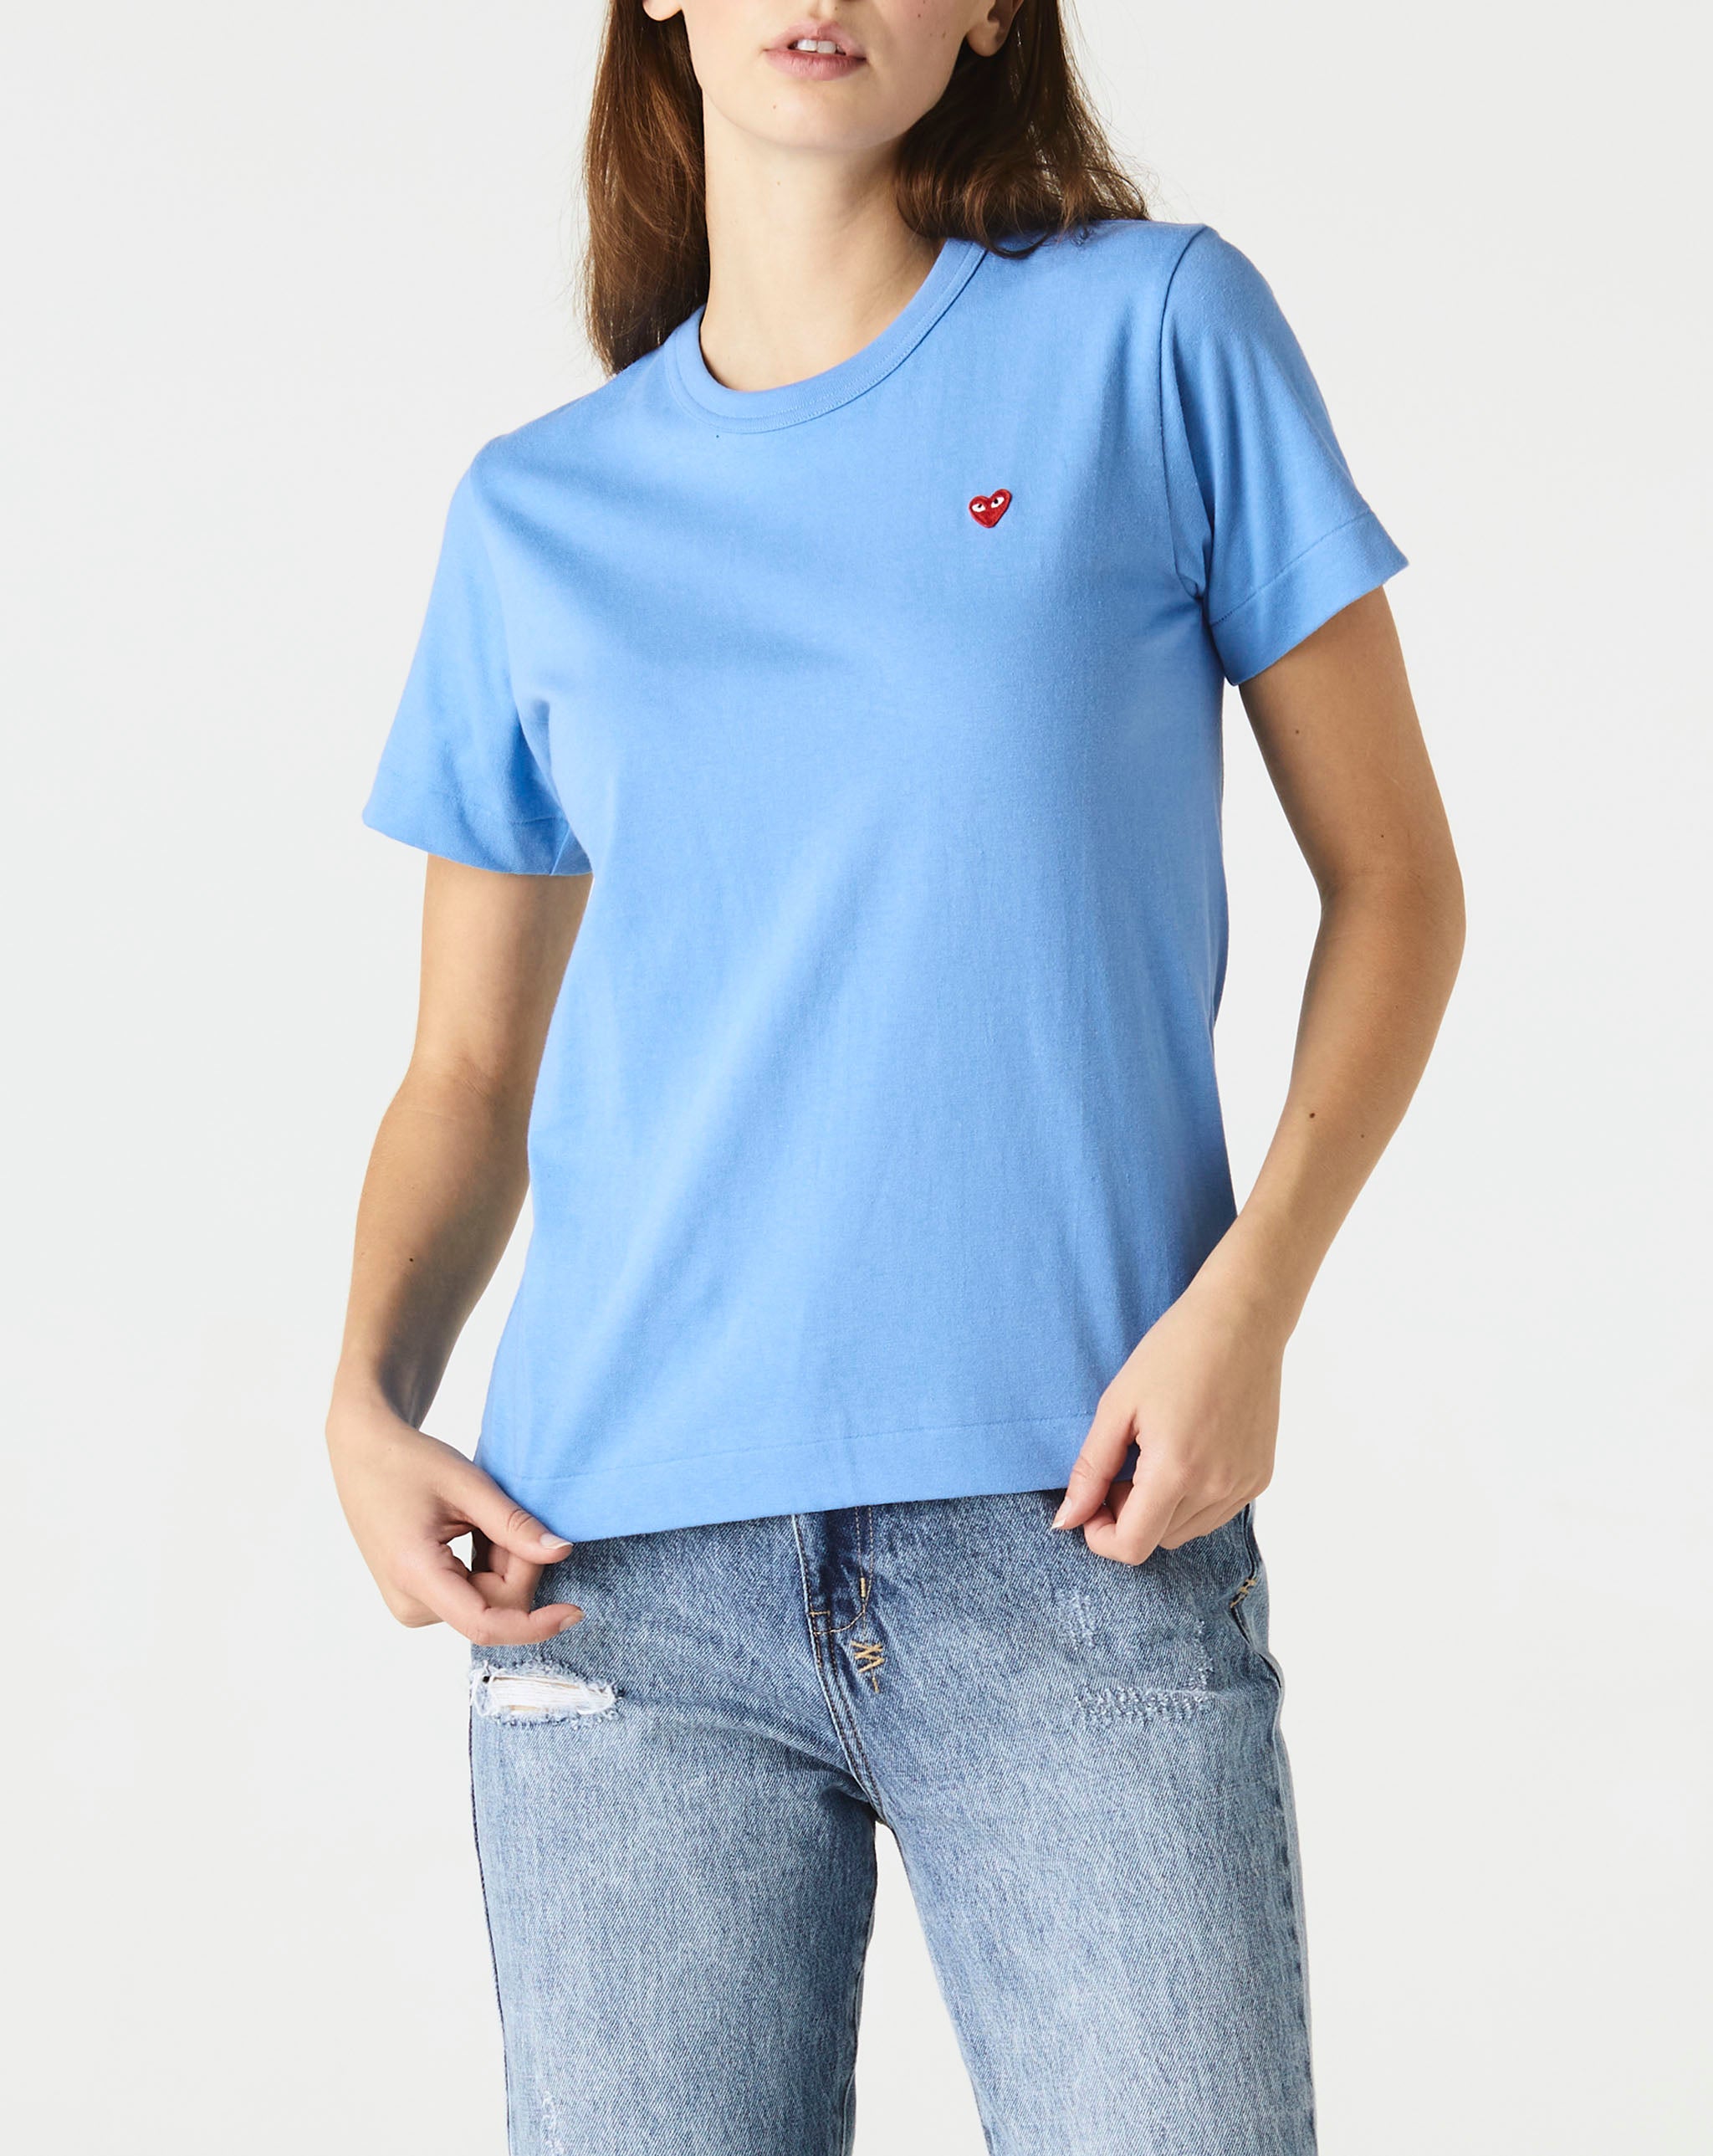 Womens Play Logo T-Shirt Women's Small Red Heart T-Shirt  - Cheap Urlfreeze Jordan outlet